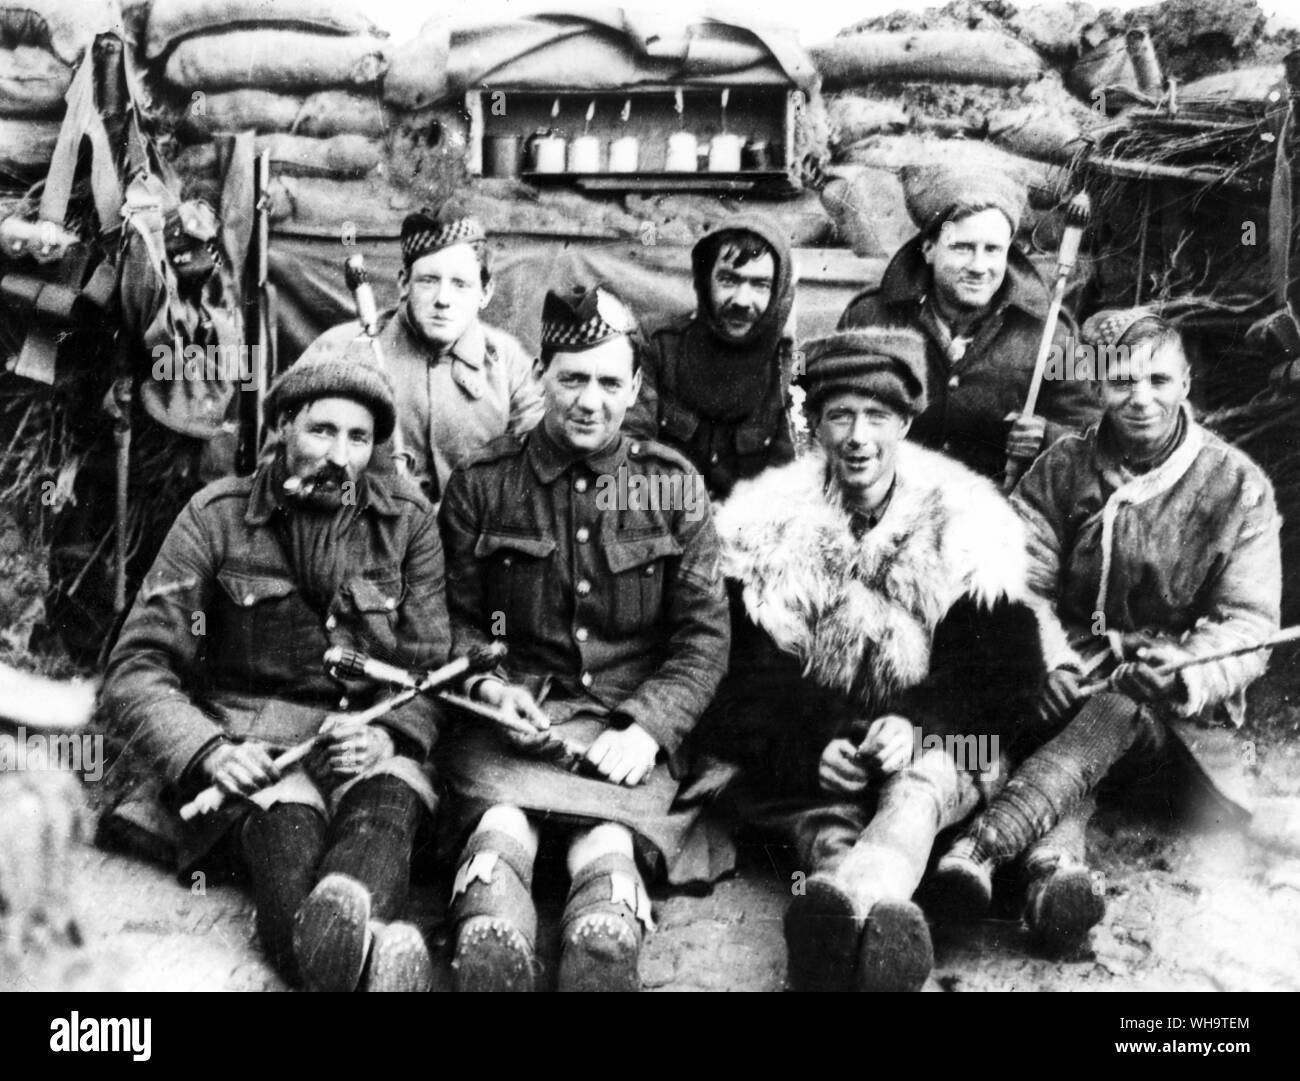 WW1: Frankreich: 2 Bataillon Argyll und Sutherland Highlanders, 19 Brigade, 6. und 7 Abteilungen, Bois Grenier Sektor, März - Juni 1915. Eine Gruppe der Bomber, die einige der ursprünglichen Bomben verwendet. Hinweis jam-Topf Bomben auf dem Regal in der Attika. Einer der Männer trägt eine Regierung problem Pelzjacke. Stockfoto